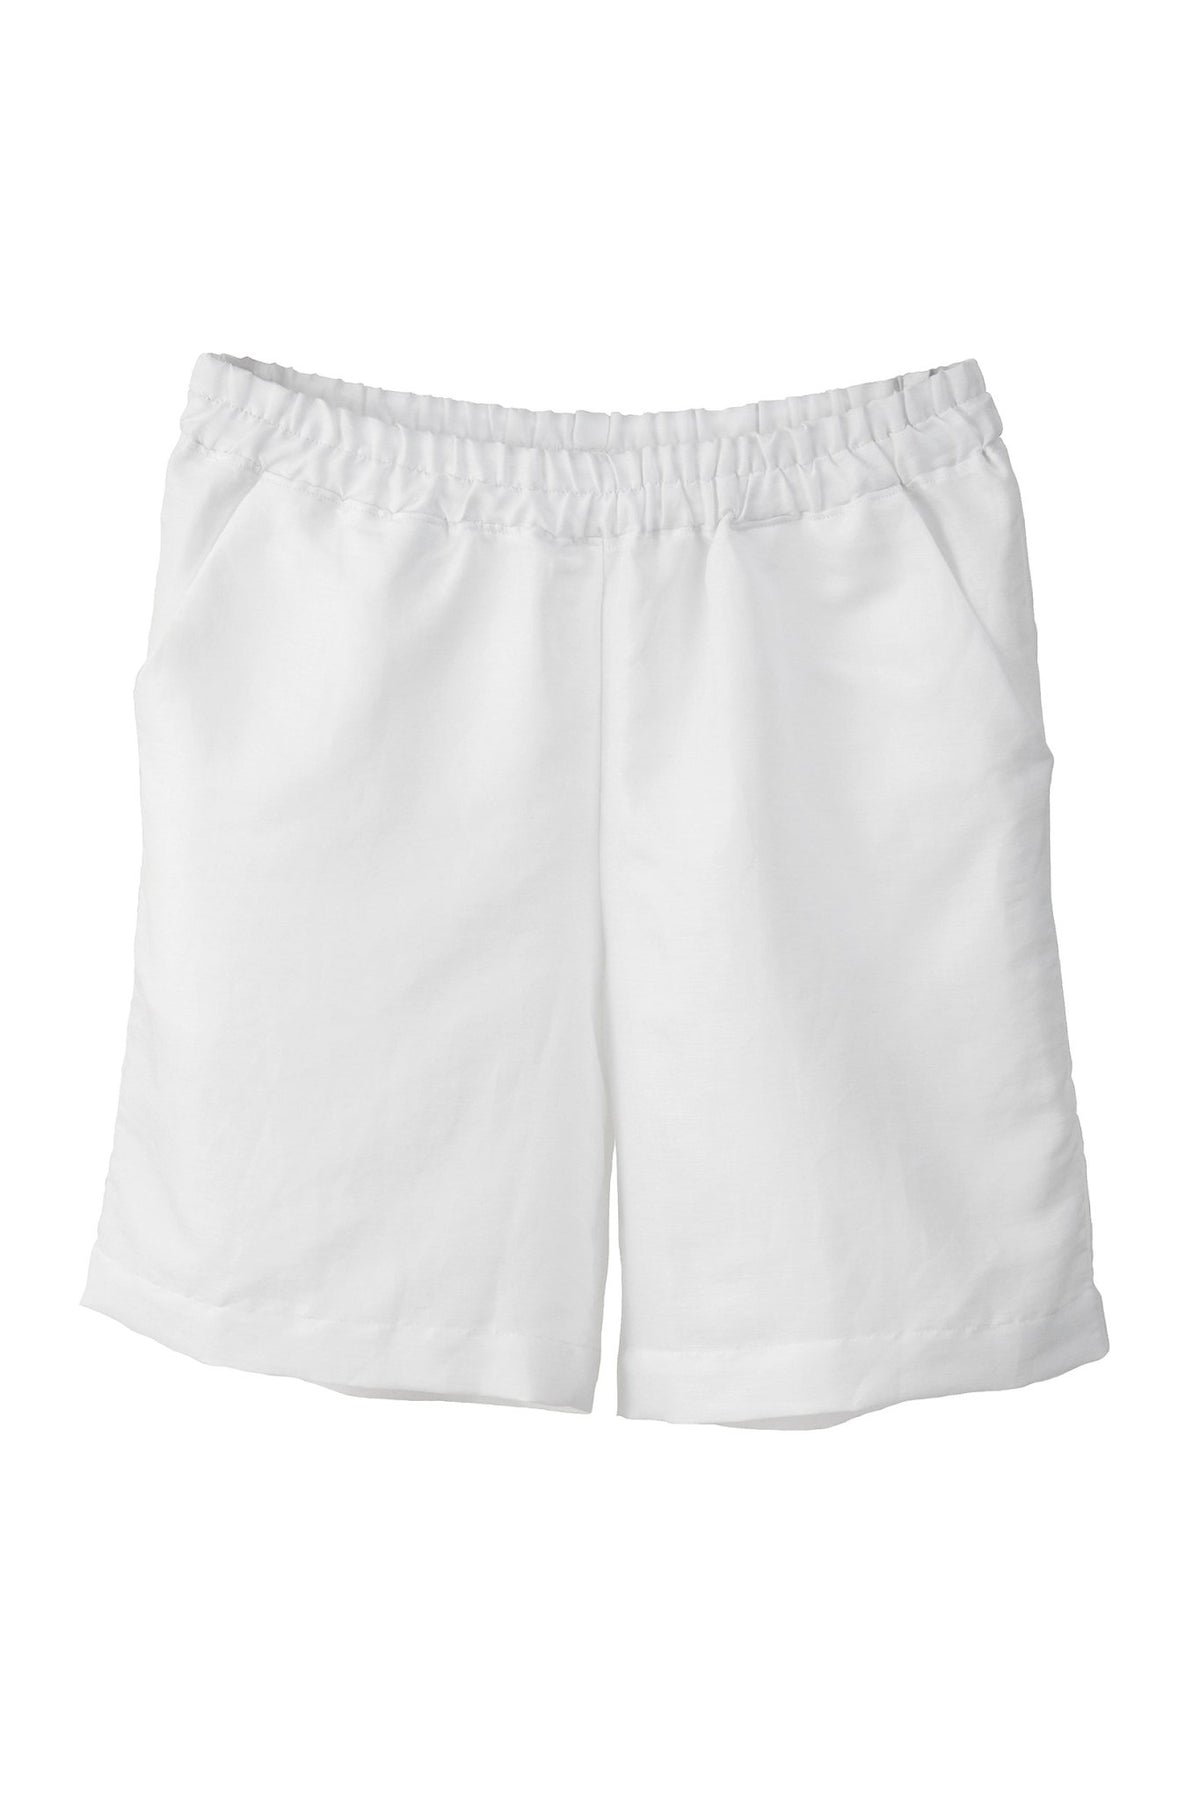 Halbleinen Homewear Shorts in Weiß Freisteller #farbe_Weiß #farbe_Weiß